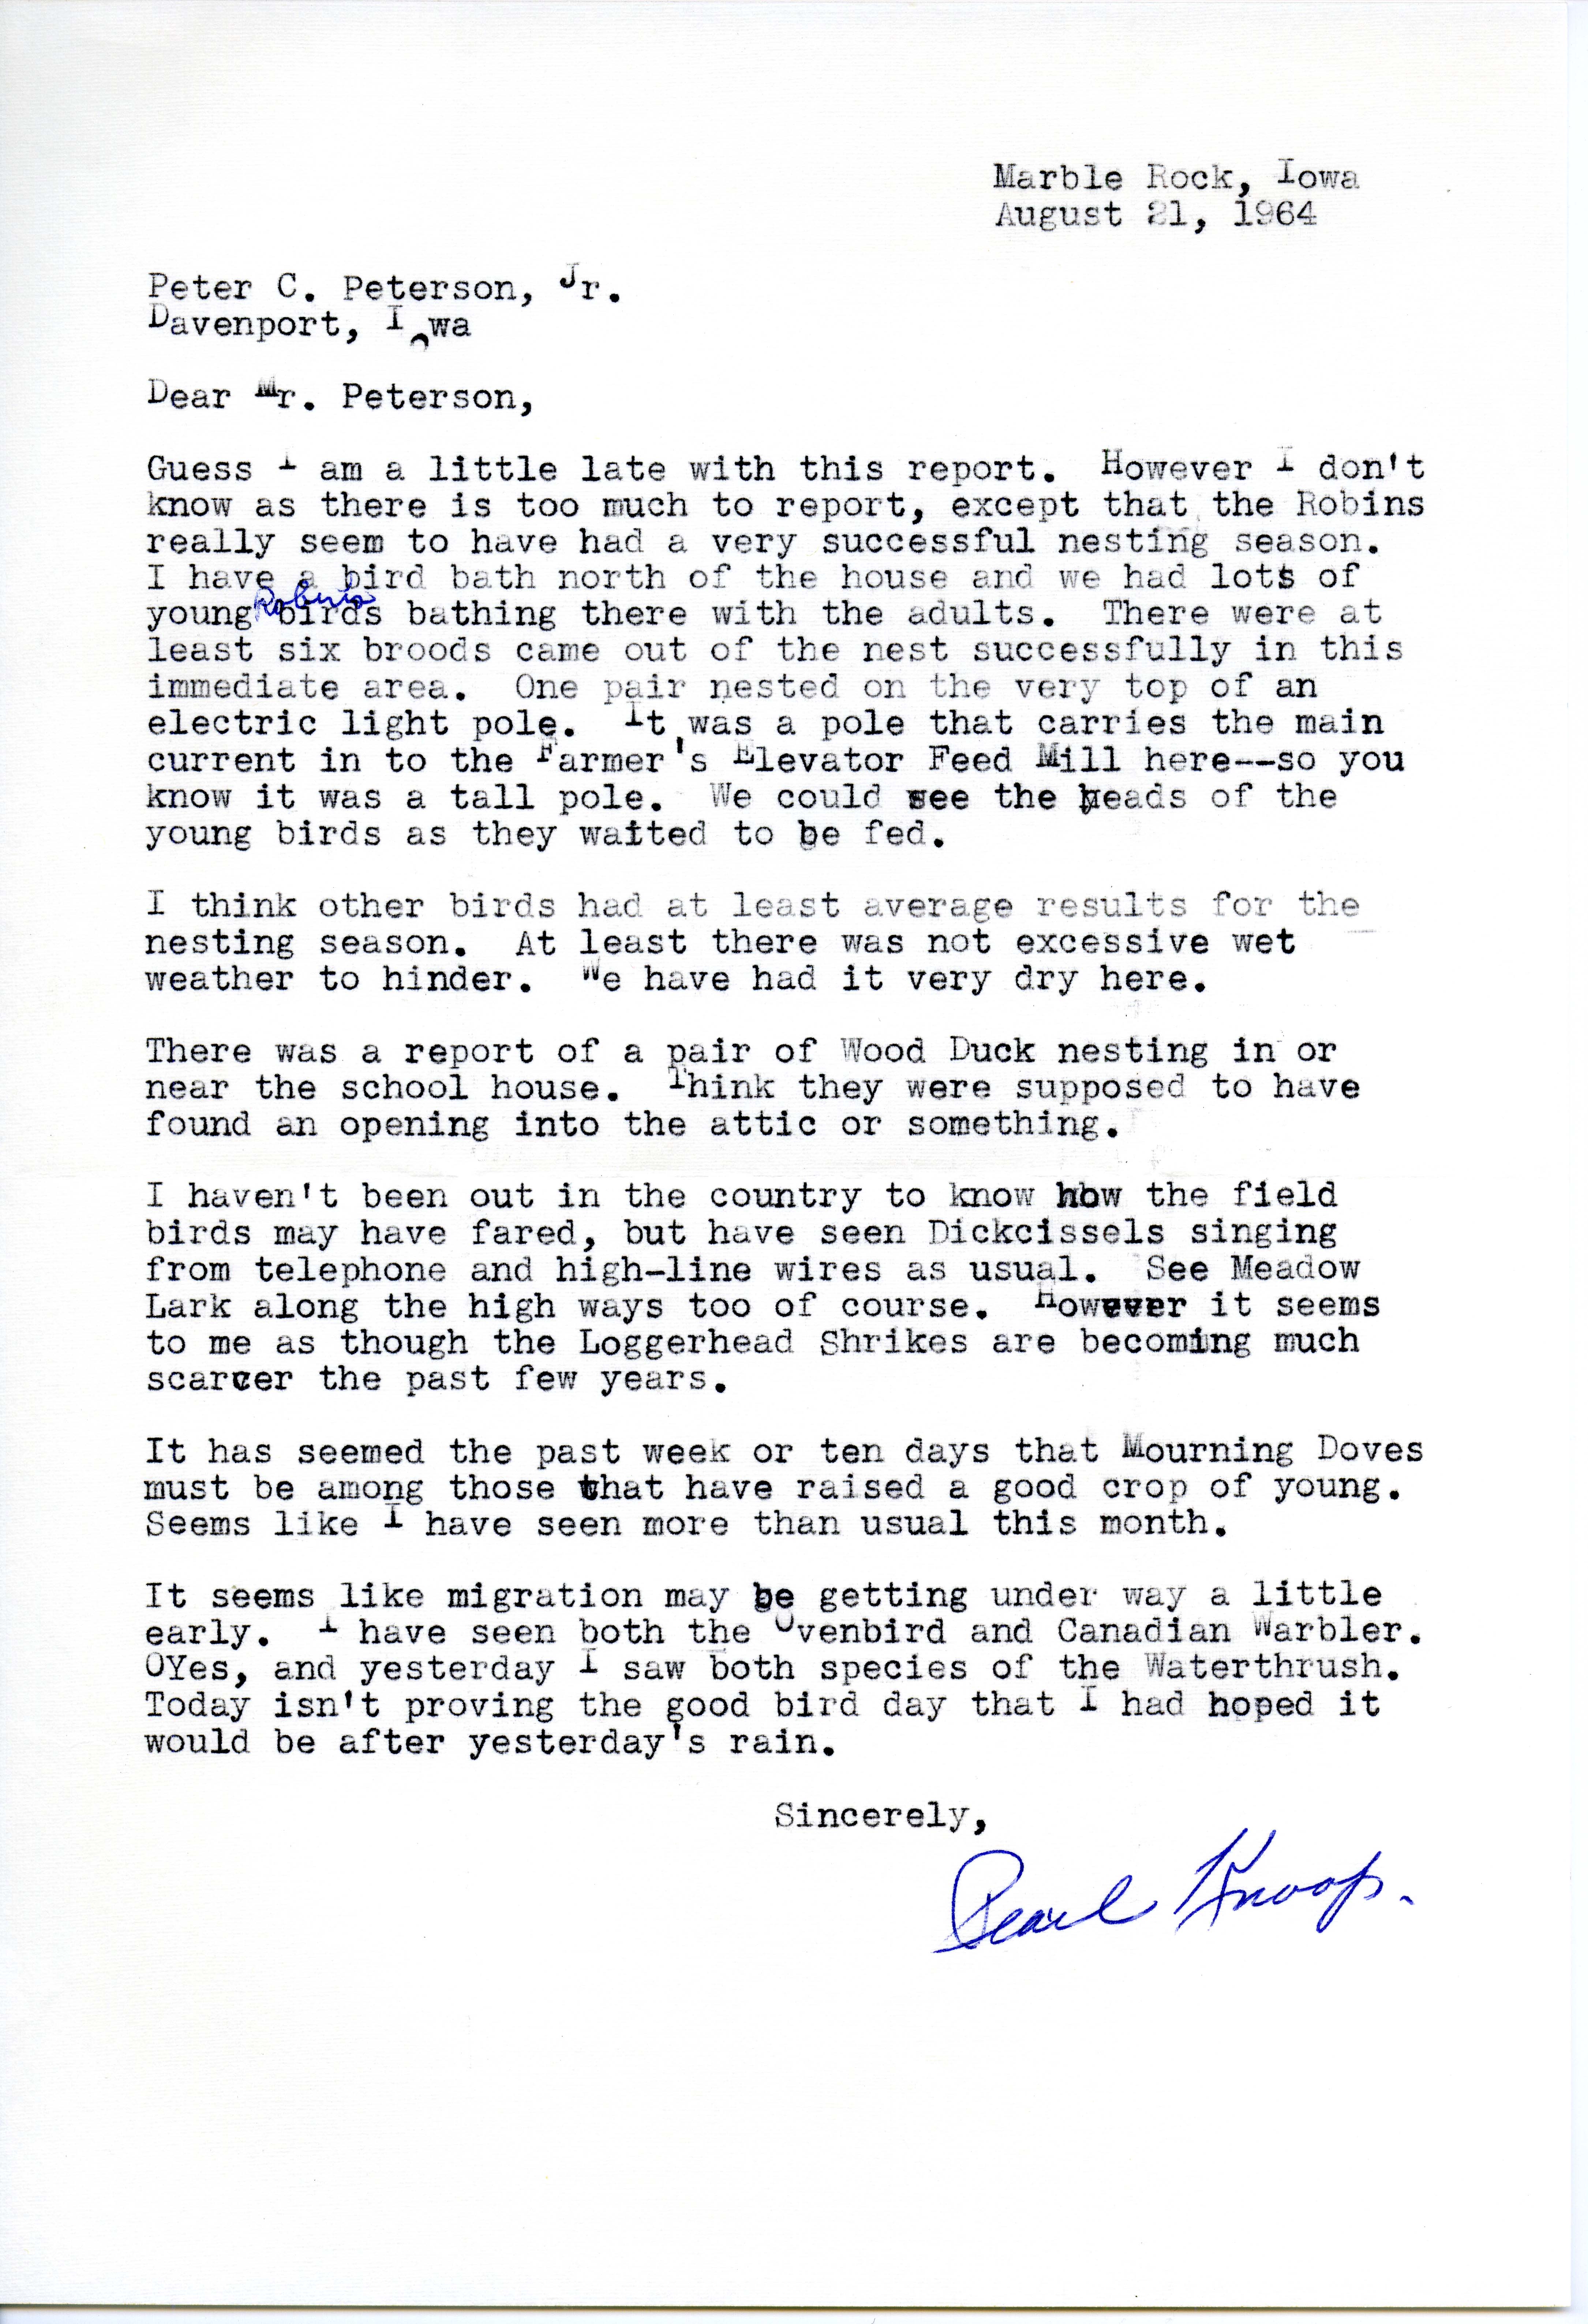 Pearl Knoop letter to Peter C. Petersen regarding nesting season, August 21, 1964